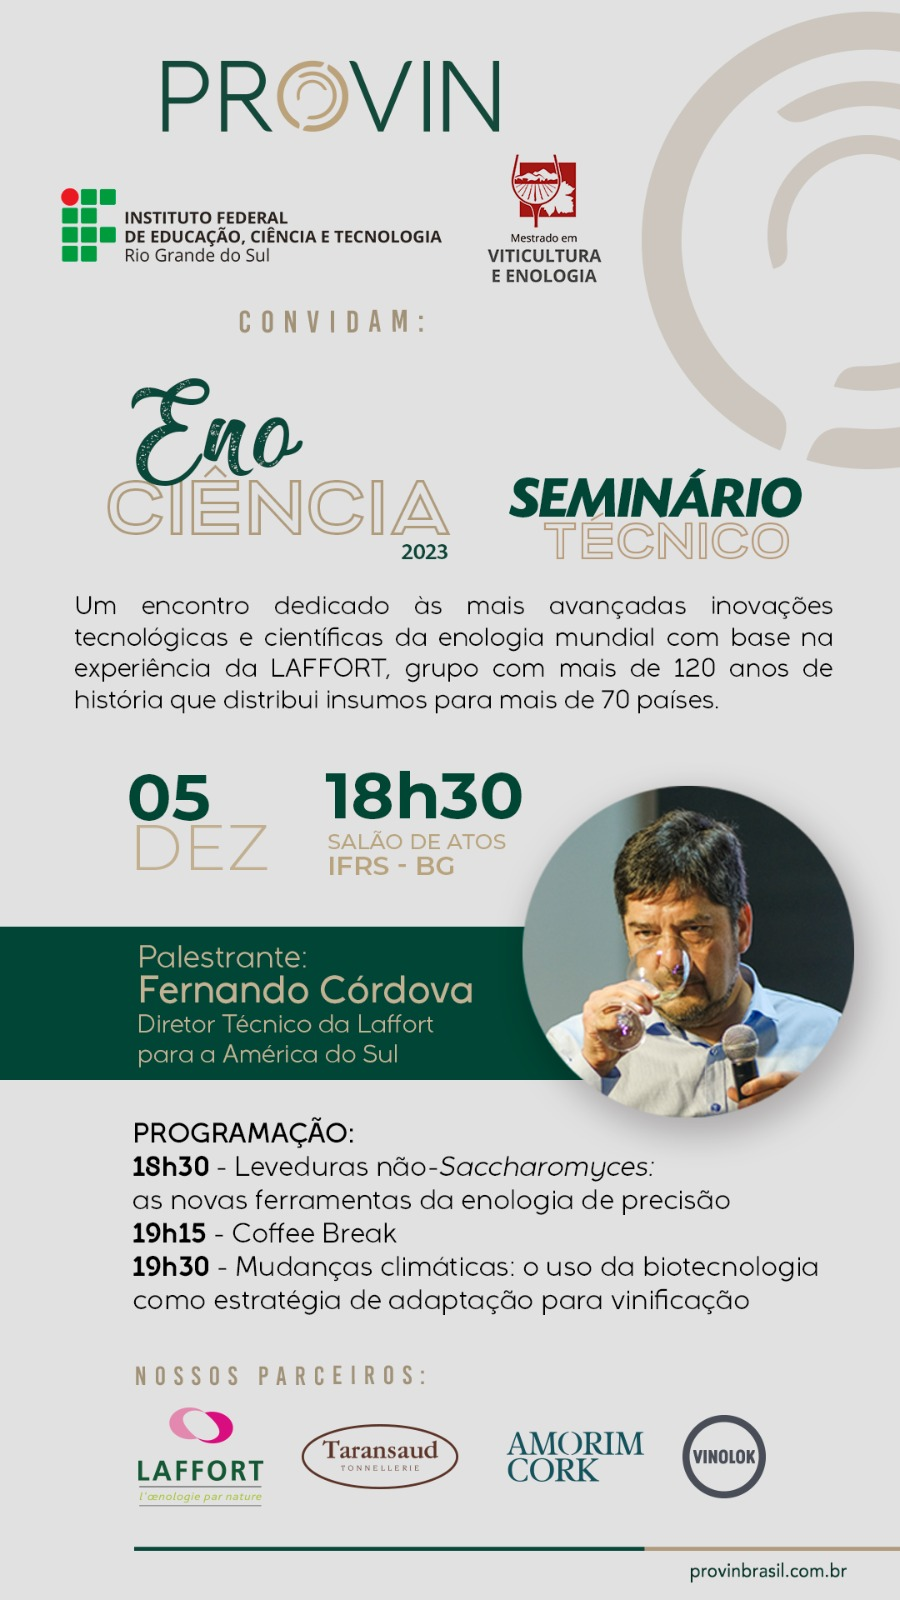 Divulgação do Seminário Técnico Eno Ciência 2023 que contará com o palestrante Fernando Córdova e acontecerá no dia 5 de dezembro, às 18h30, no Salão de Atos do IFRS - BG.